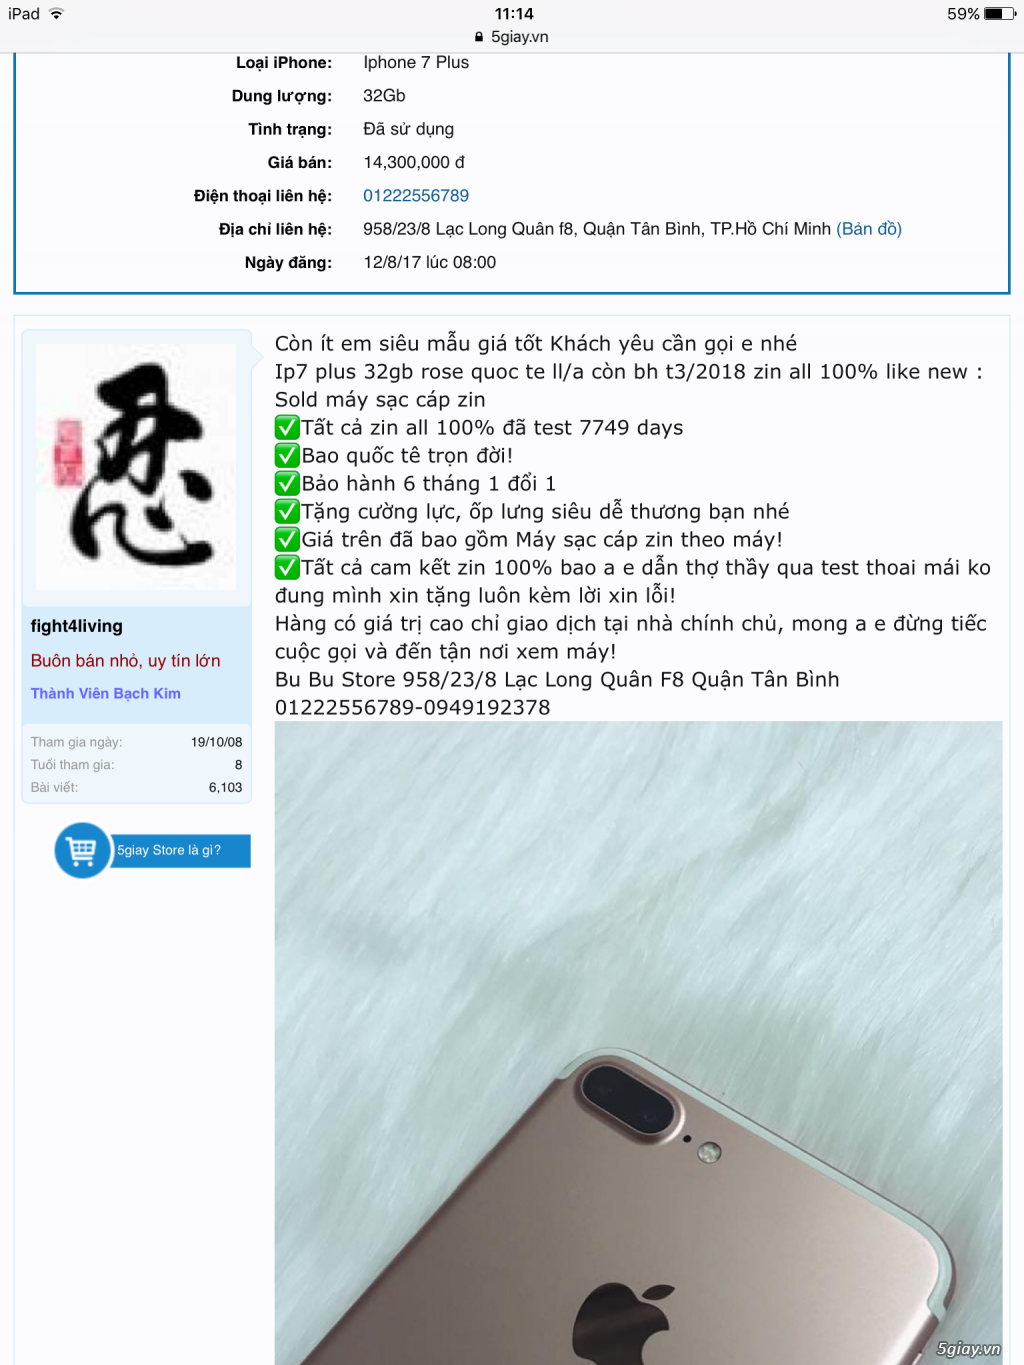 [ Đôn giá ] Banh sàn iphone 7 plus 32gb đen new 100% end 23h59p ngày 31/08/2017 - 4